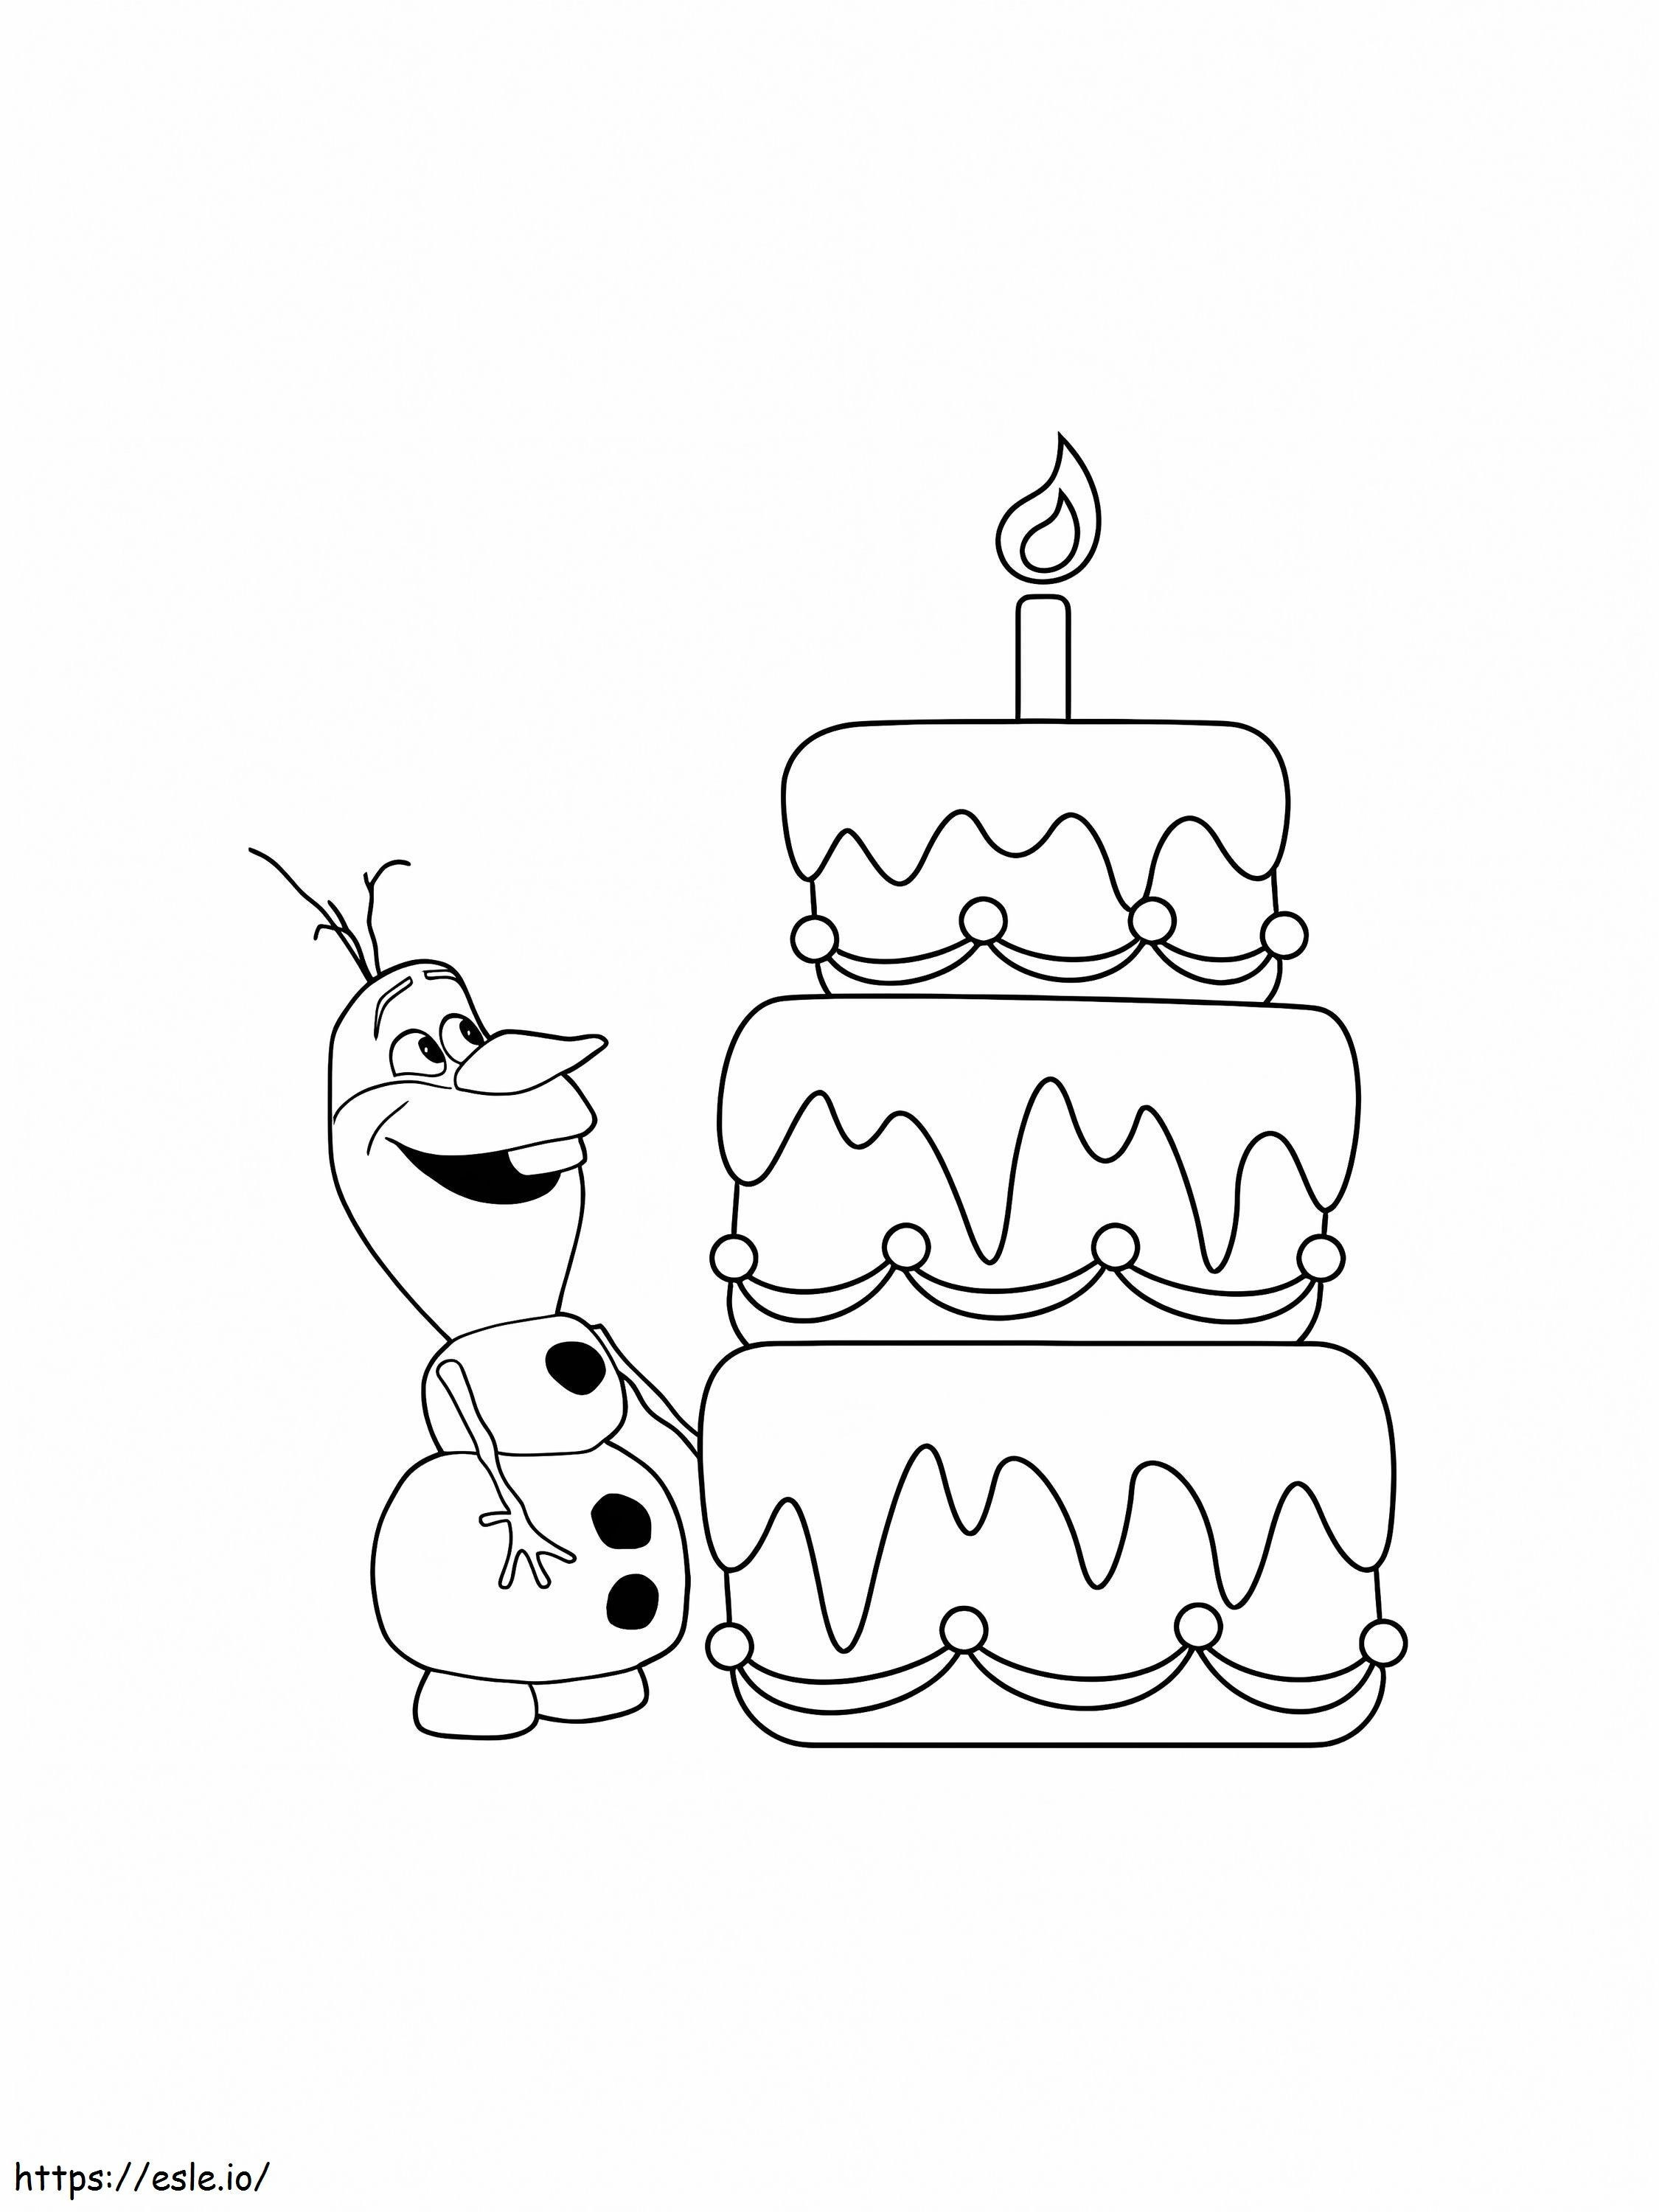 Olaf com bolo de aniversário para colorir